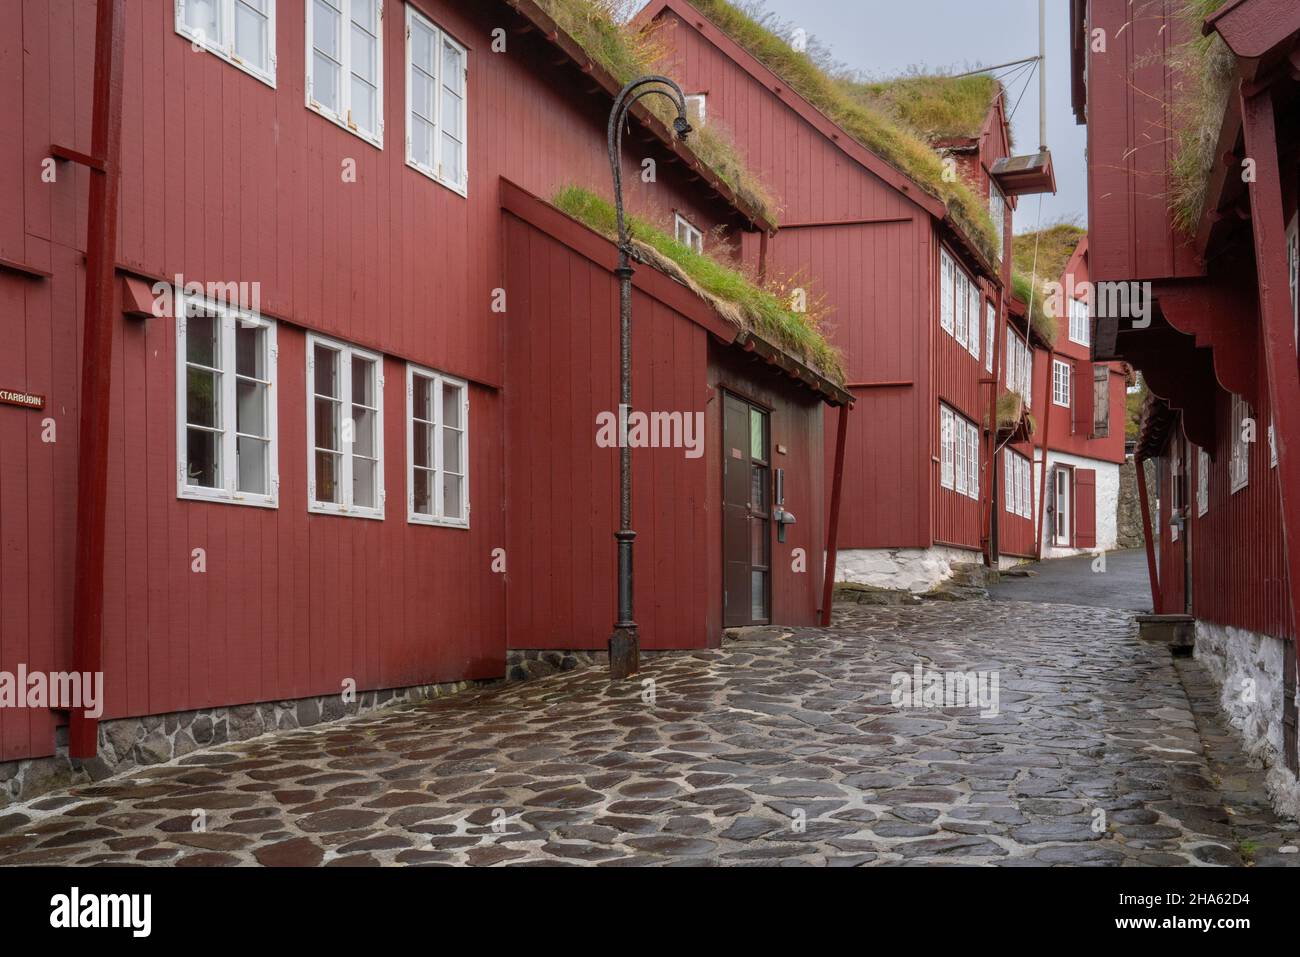 Regierungsgebäude in torshavn, der Hauptstadt der färöer-Inseln, der insel streymoy, dem autonomen Archipel, dänemark Stockfoto